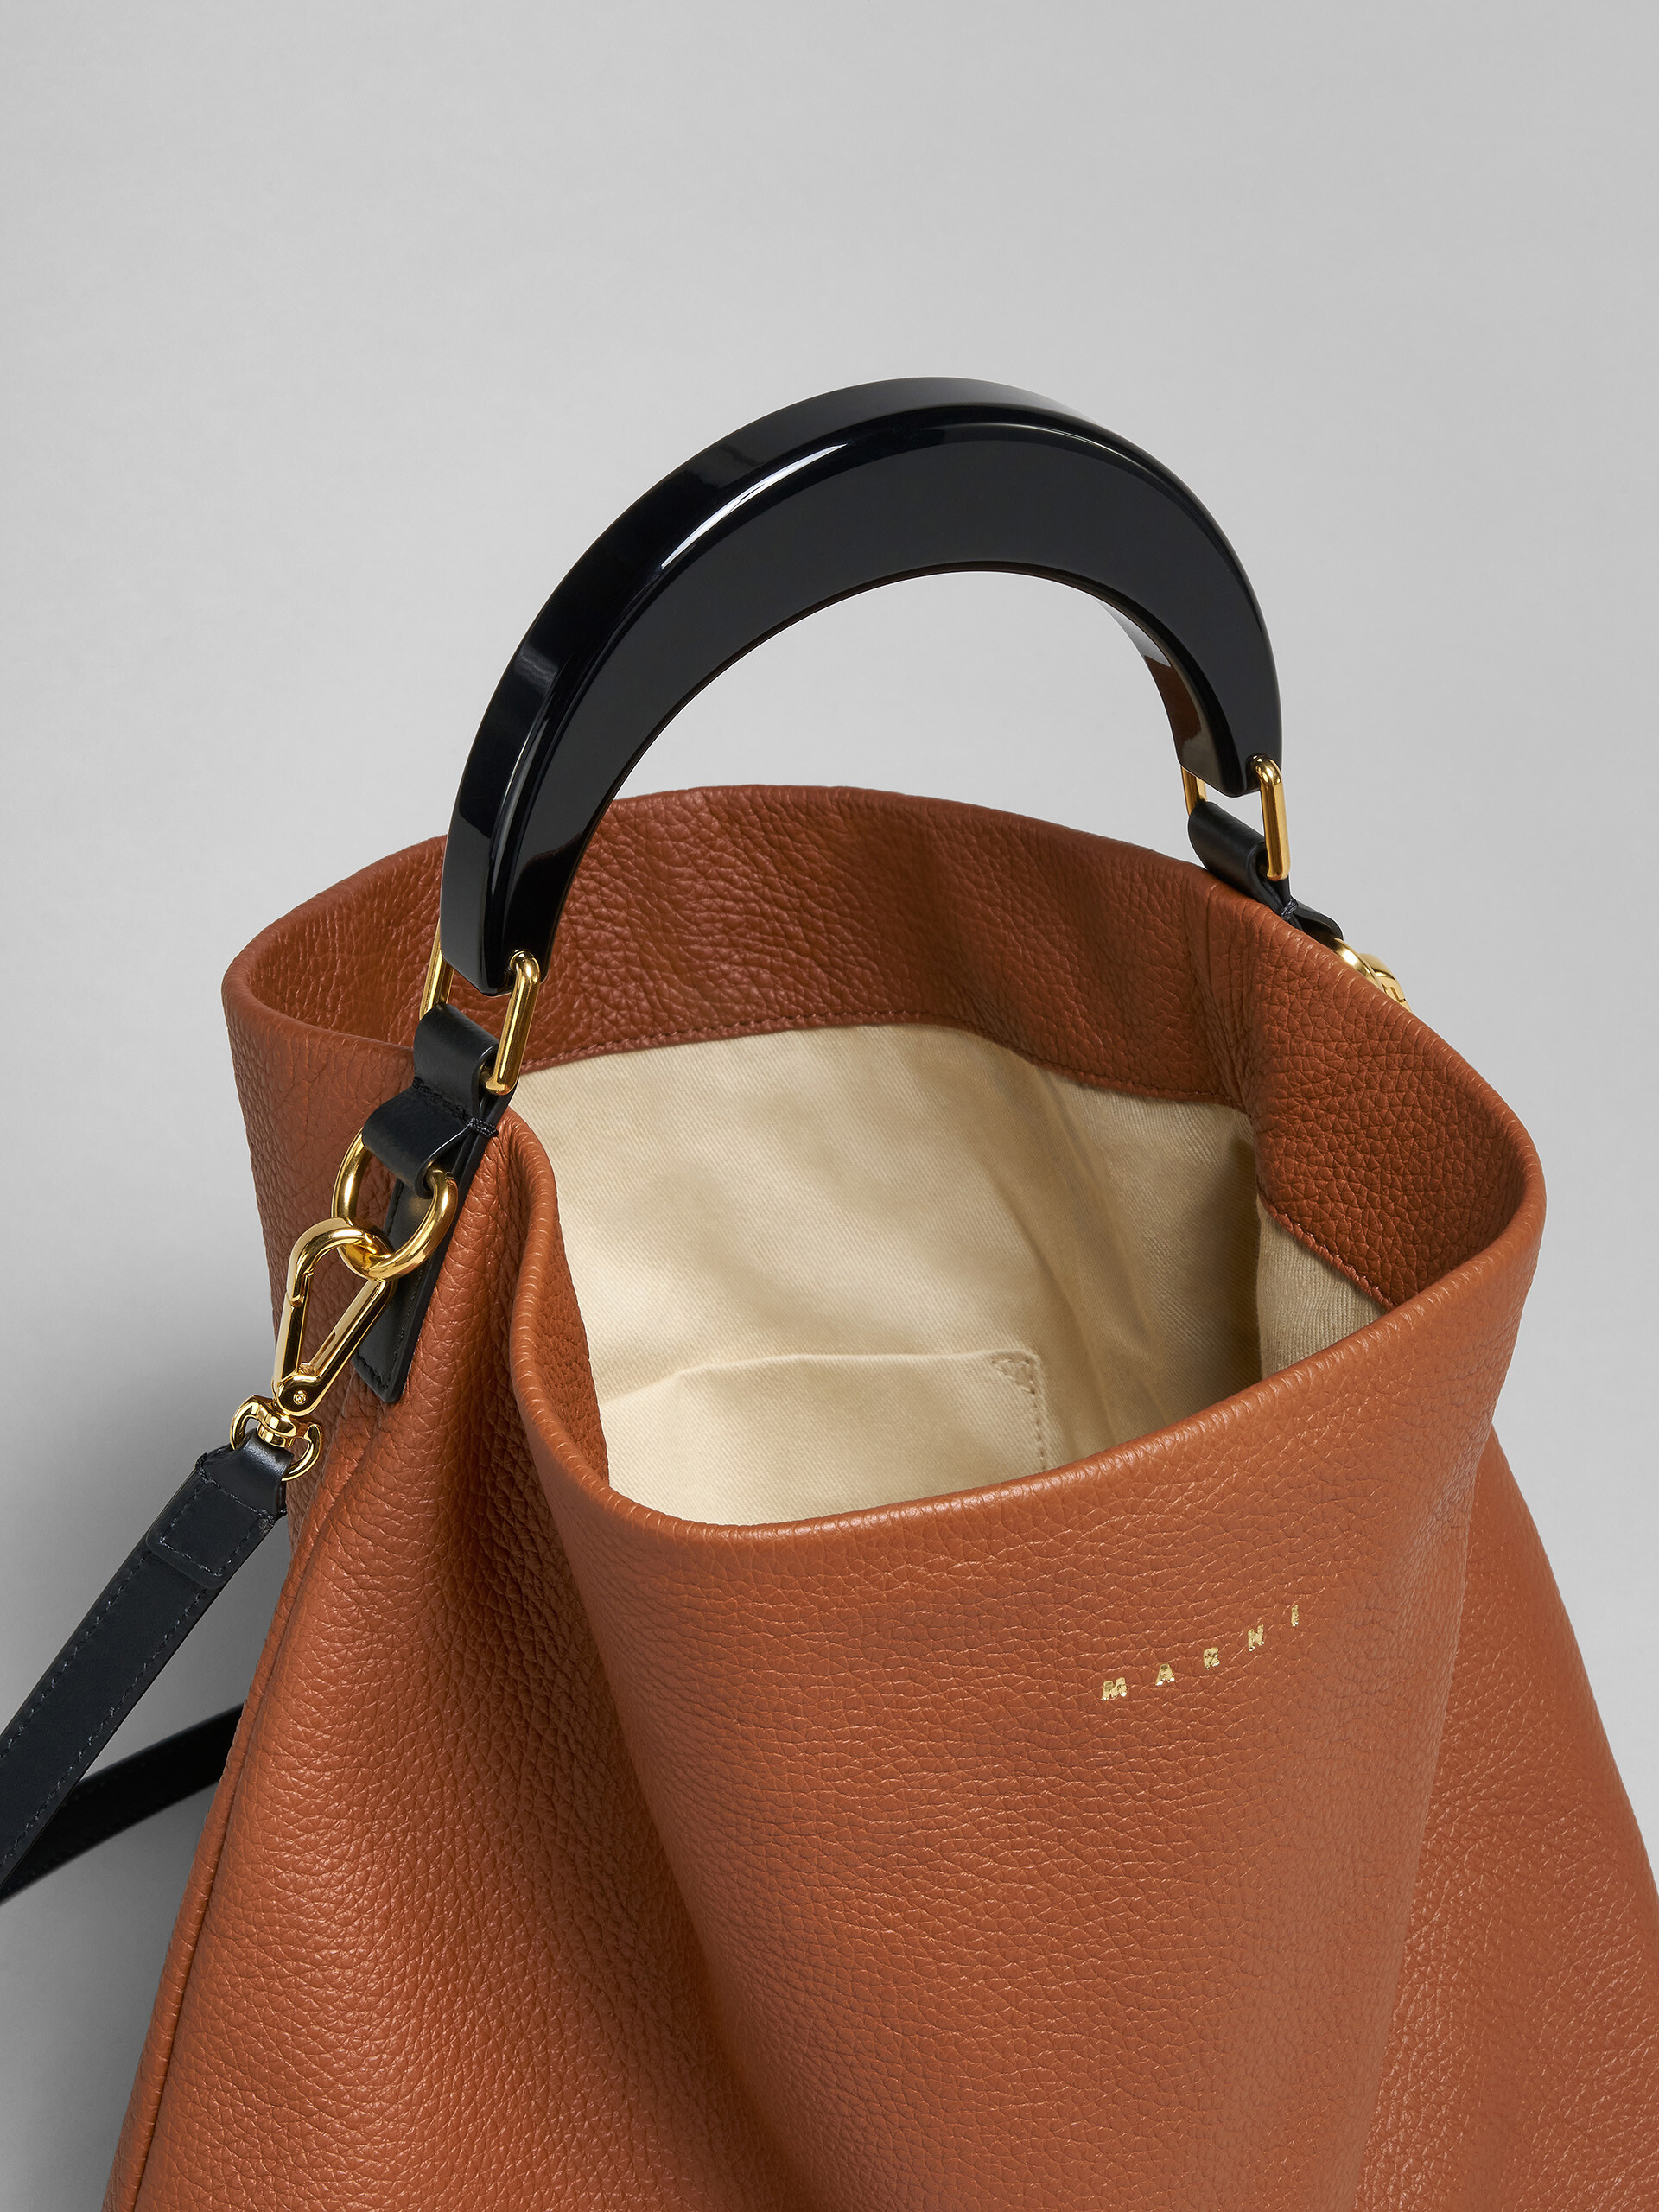 Venice medium bag in brown leather - Shoulder Bag - Image 4